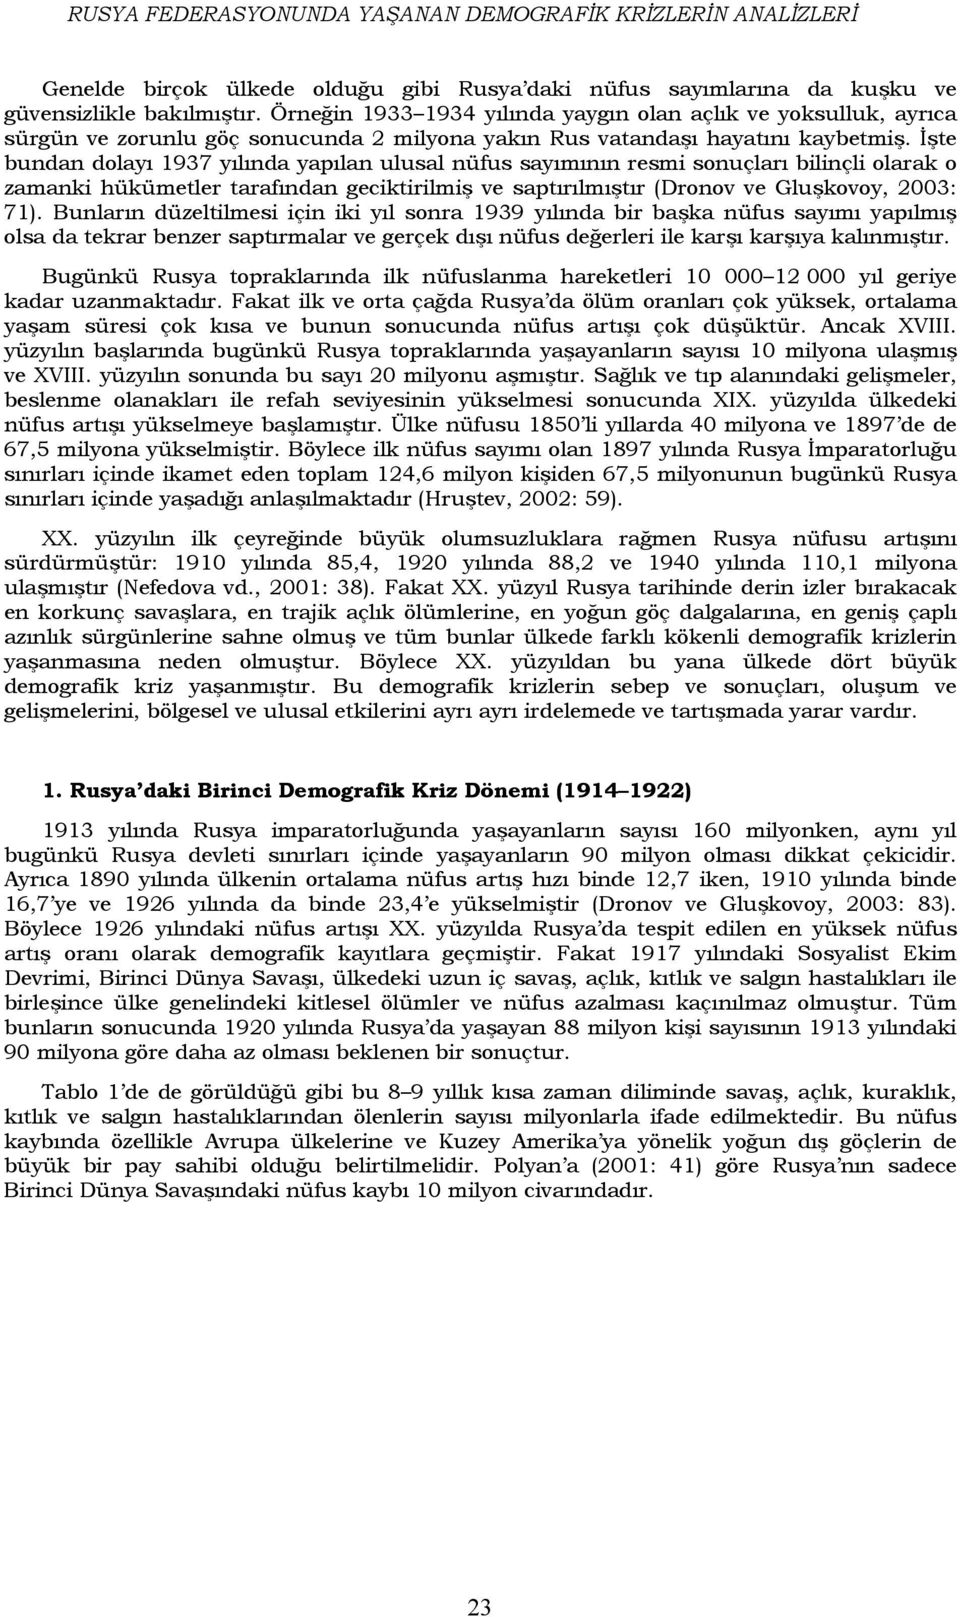 İşte bundan dolayı 1937 yılında yapılan ulusal nüfus sayımının resmi sonuçları bilinçli olarak o zamanki hükümetler tarafından geciktirilmiş ve saptırılmıştır (Dronov ve Gluşkovoy, 2003: 71).